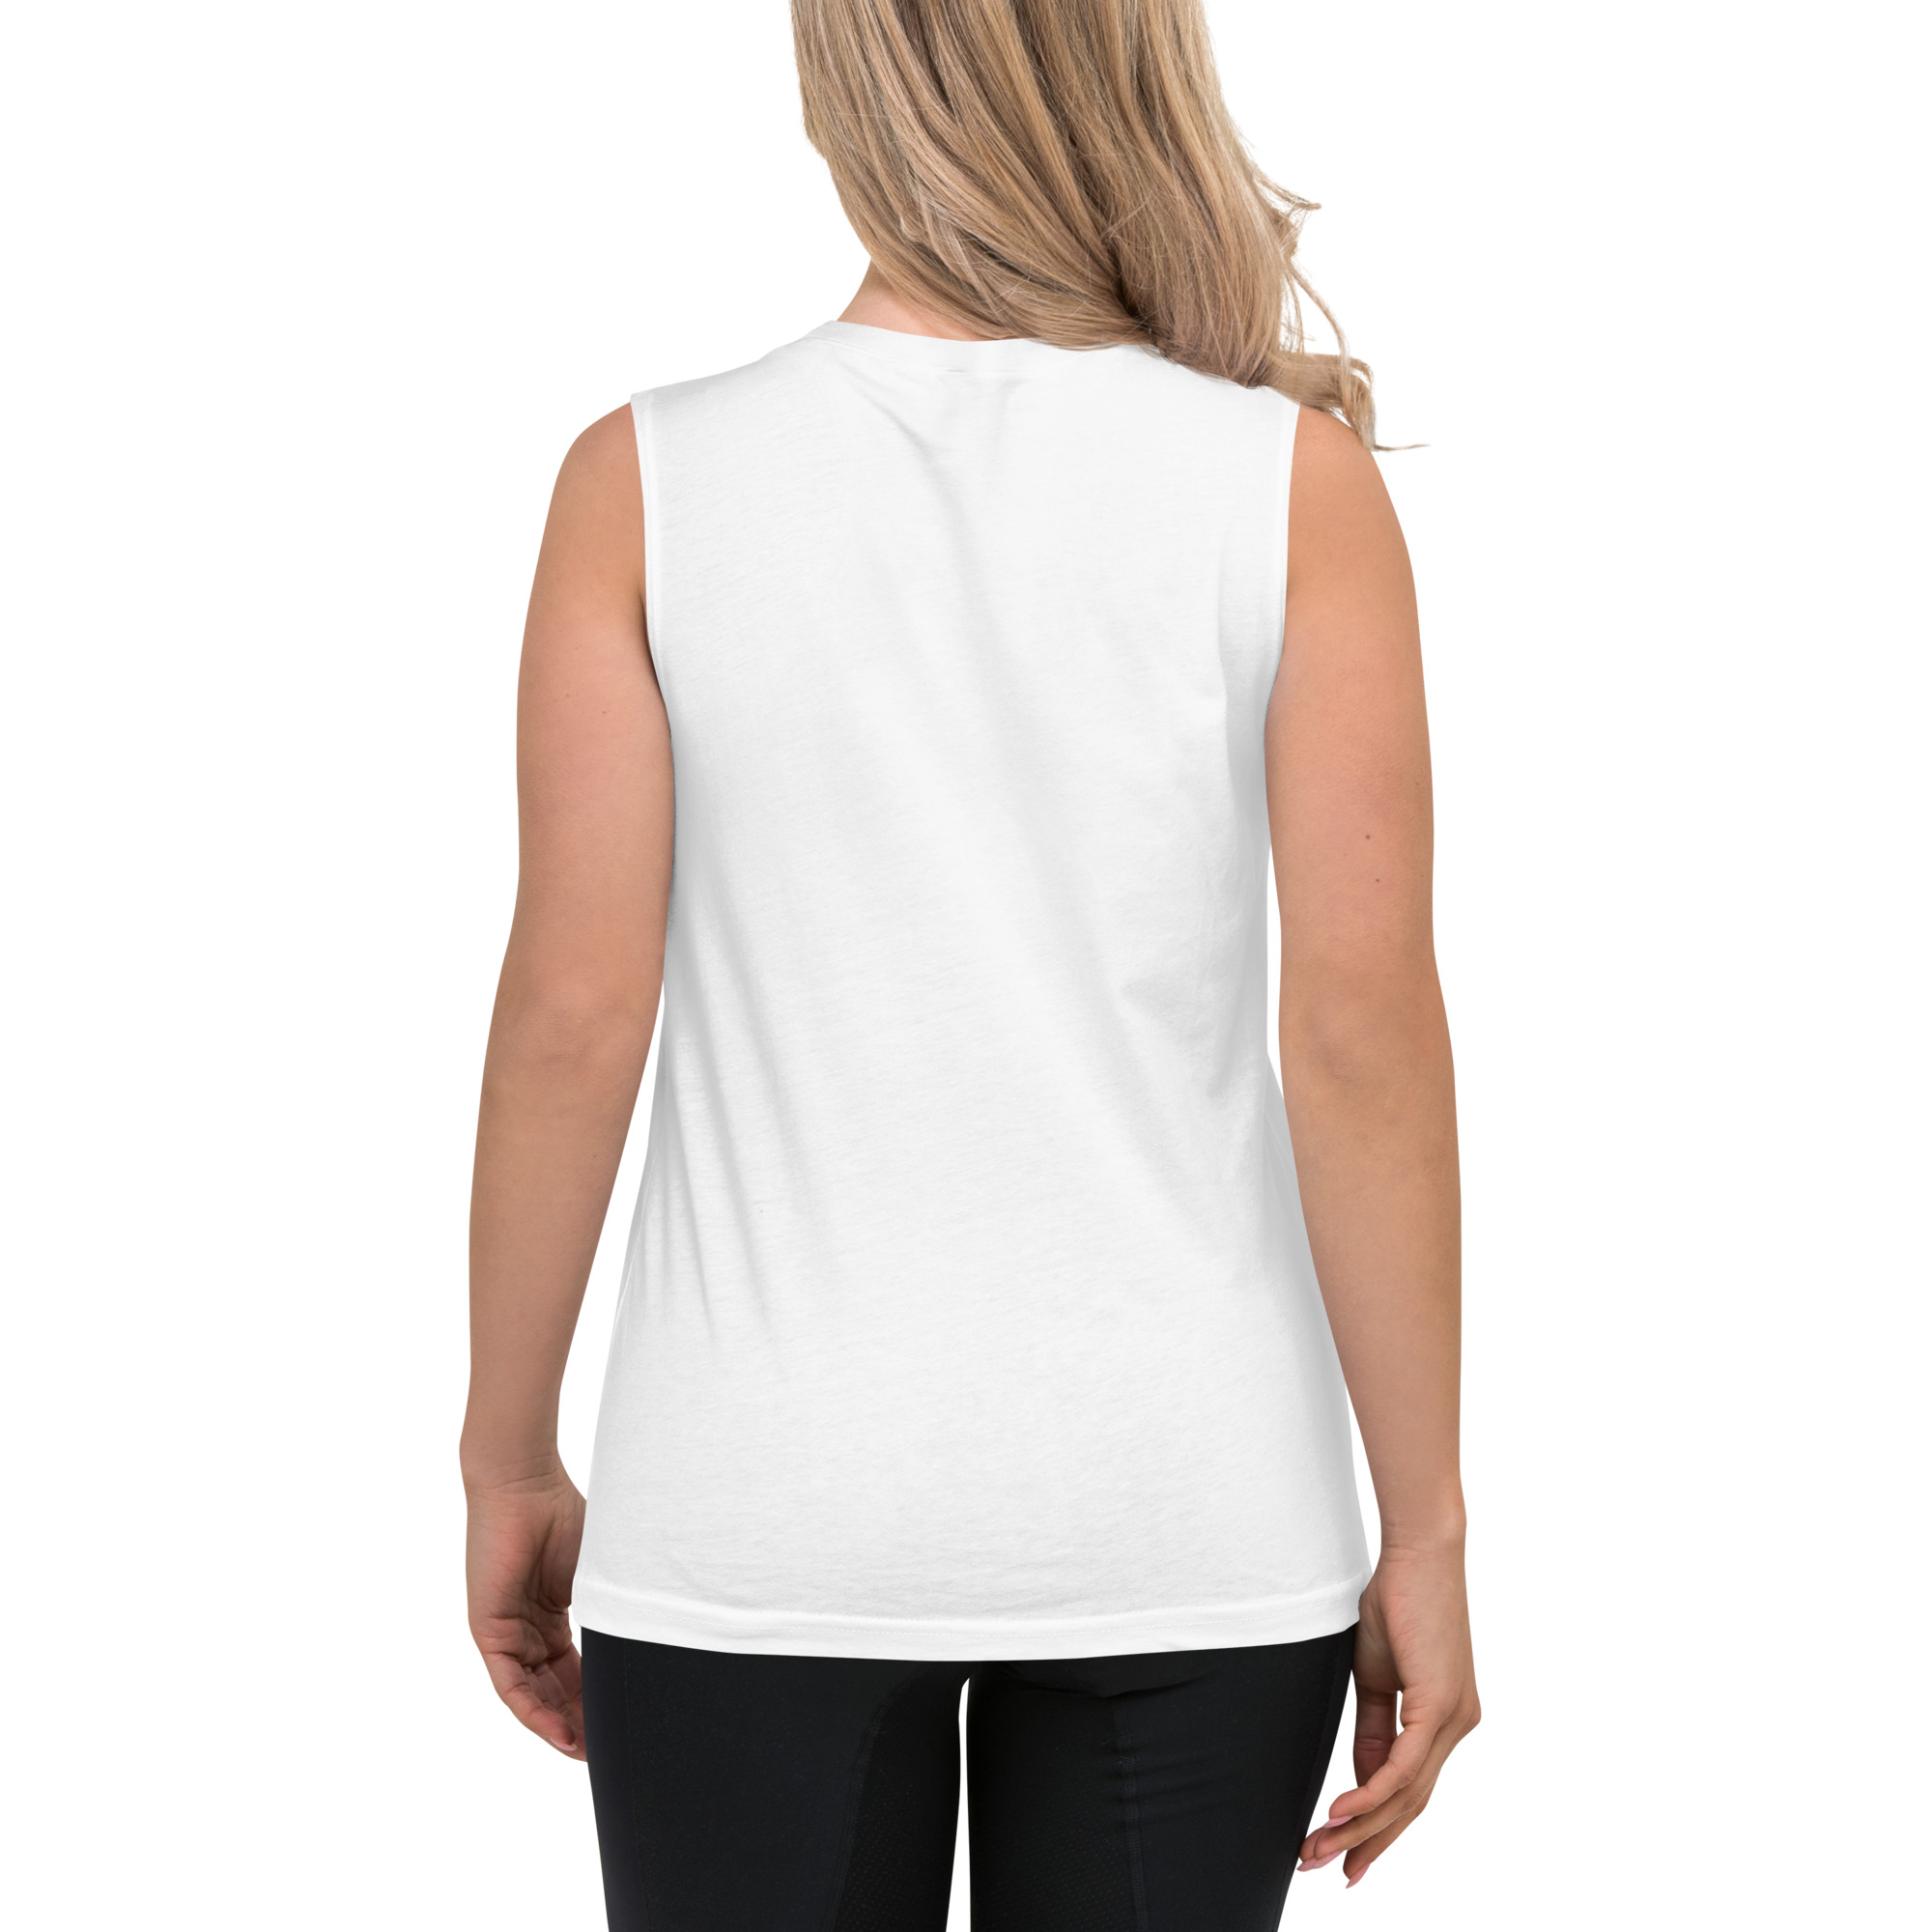 unisex-muscle-shirt-white-back-642b9818e7d98.jpg